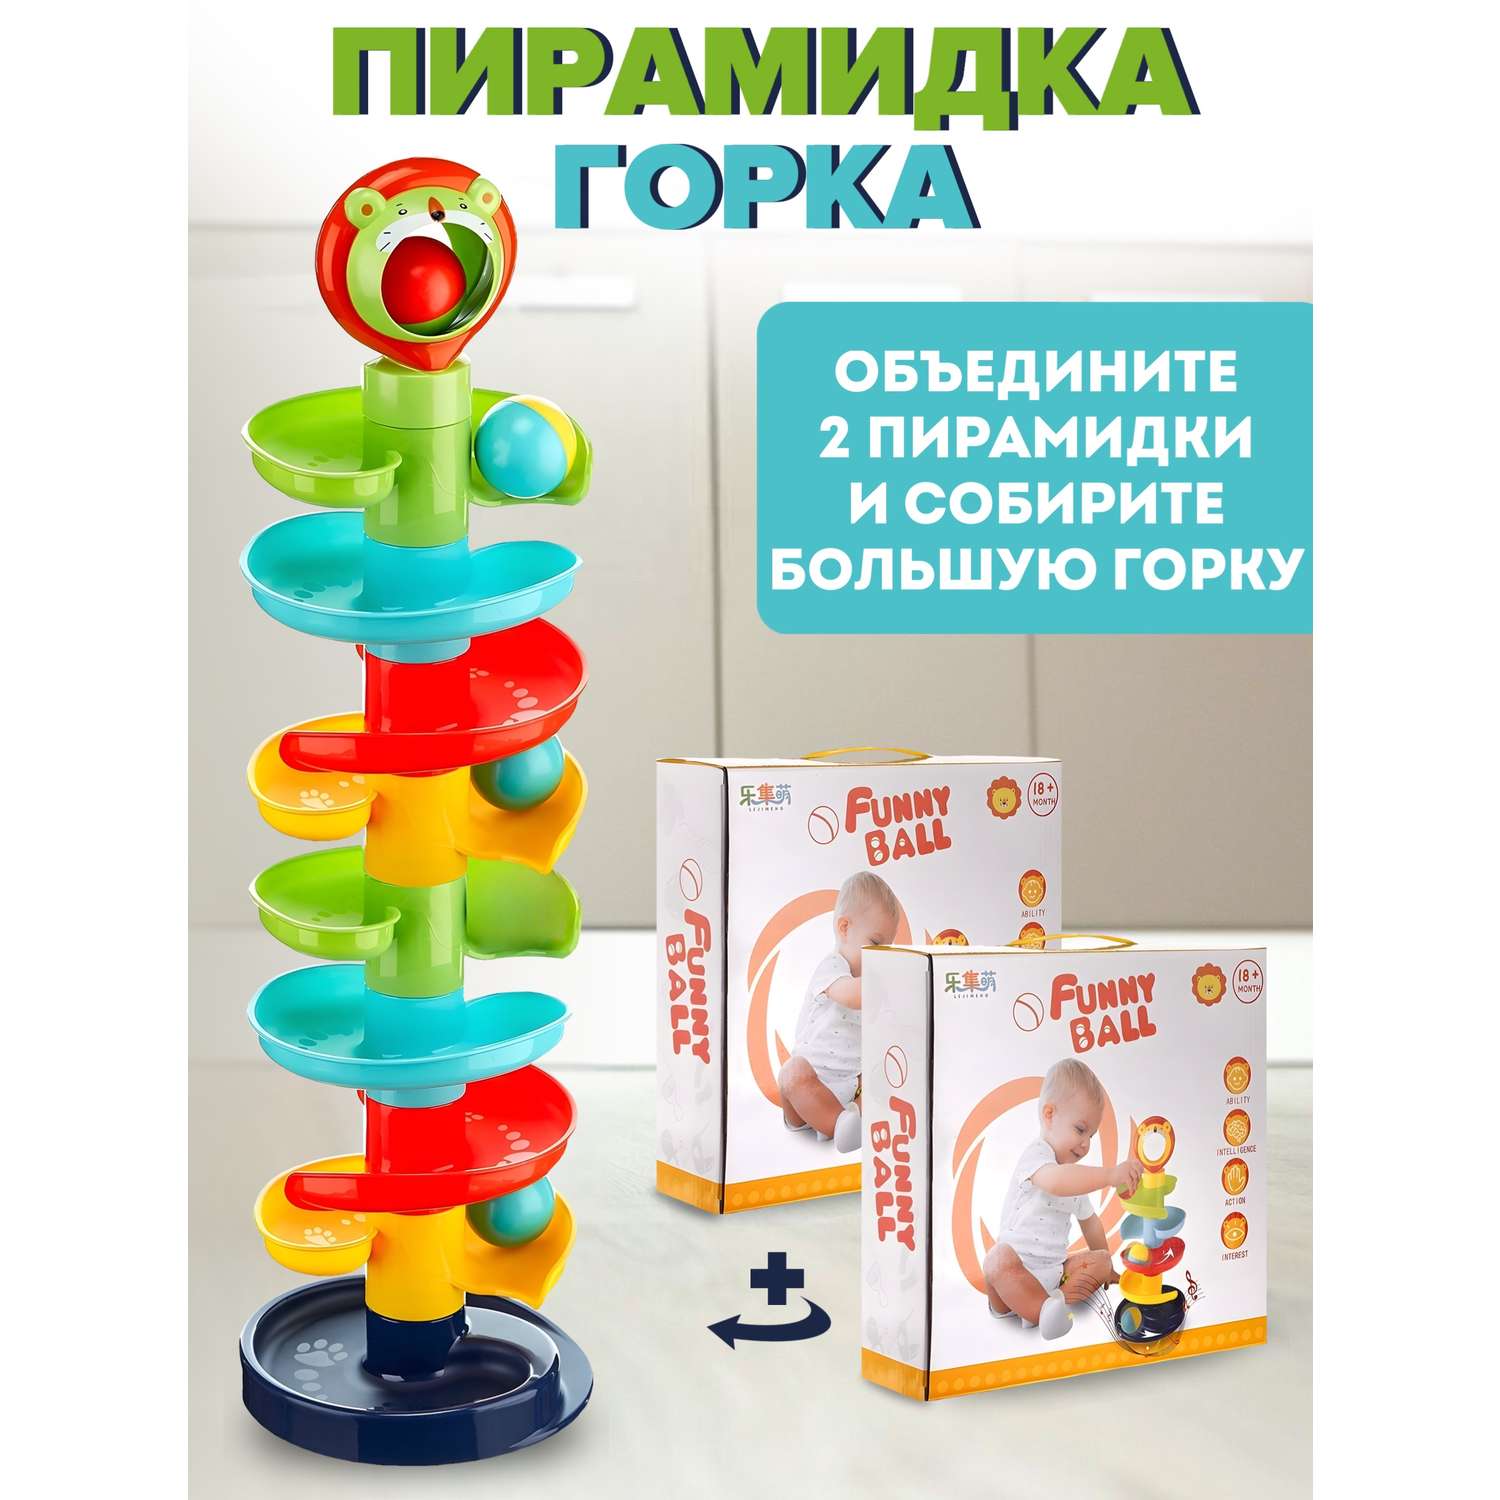 Игрушка Donty-Tonty Развивающая игрушка пирамидка с шариками - фото 4